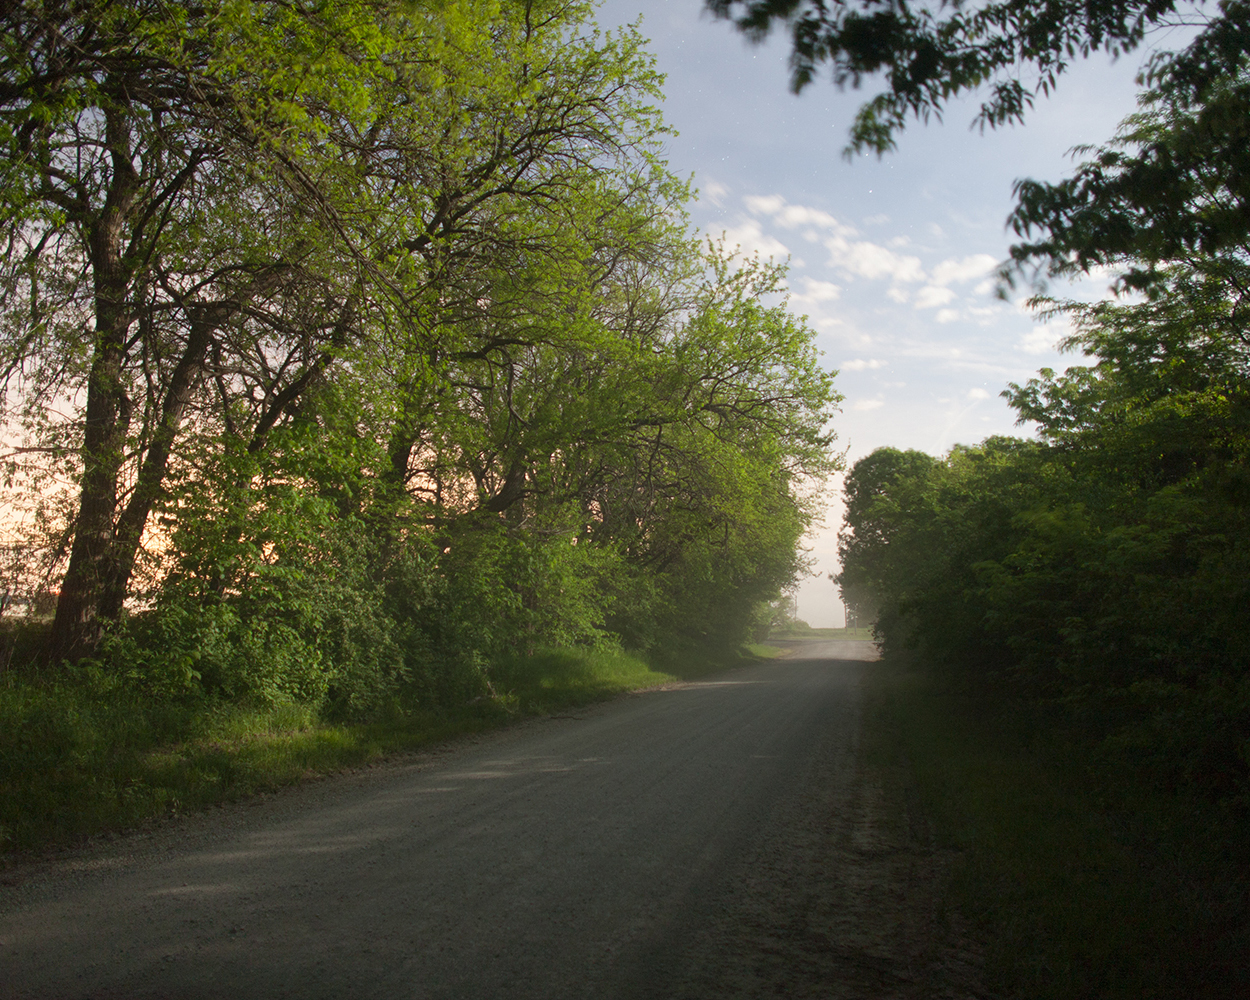 The Family Road, Baldwin City, Kansas, 2011